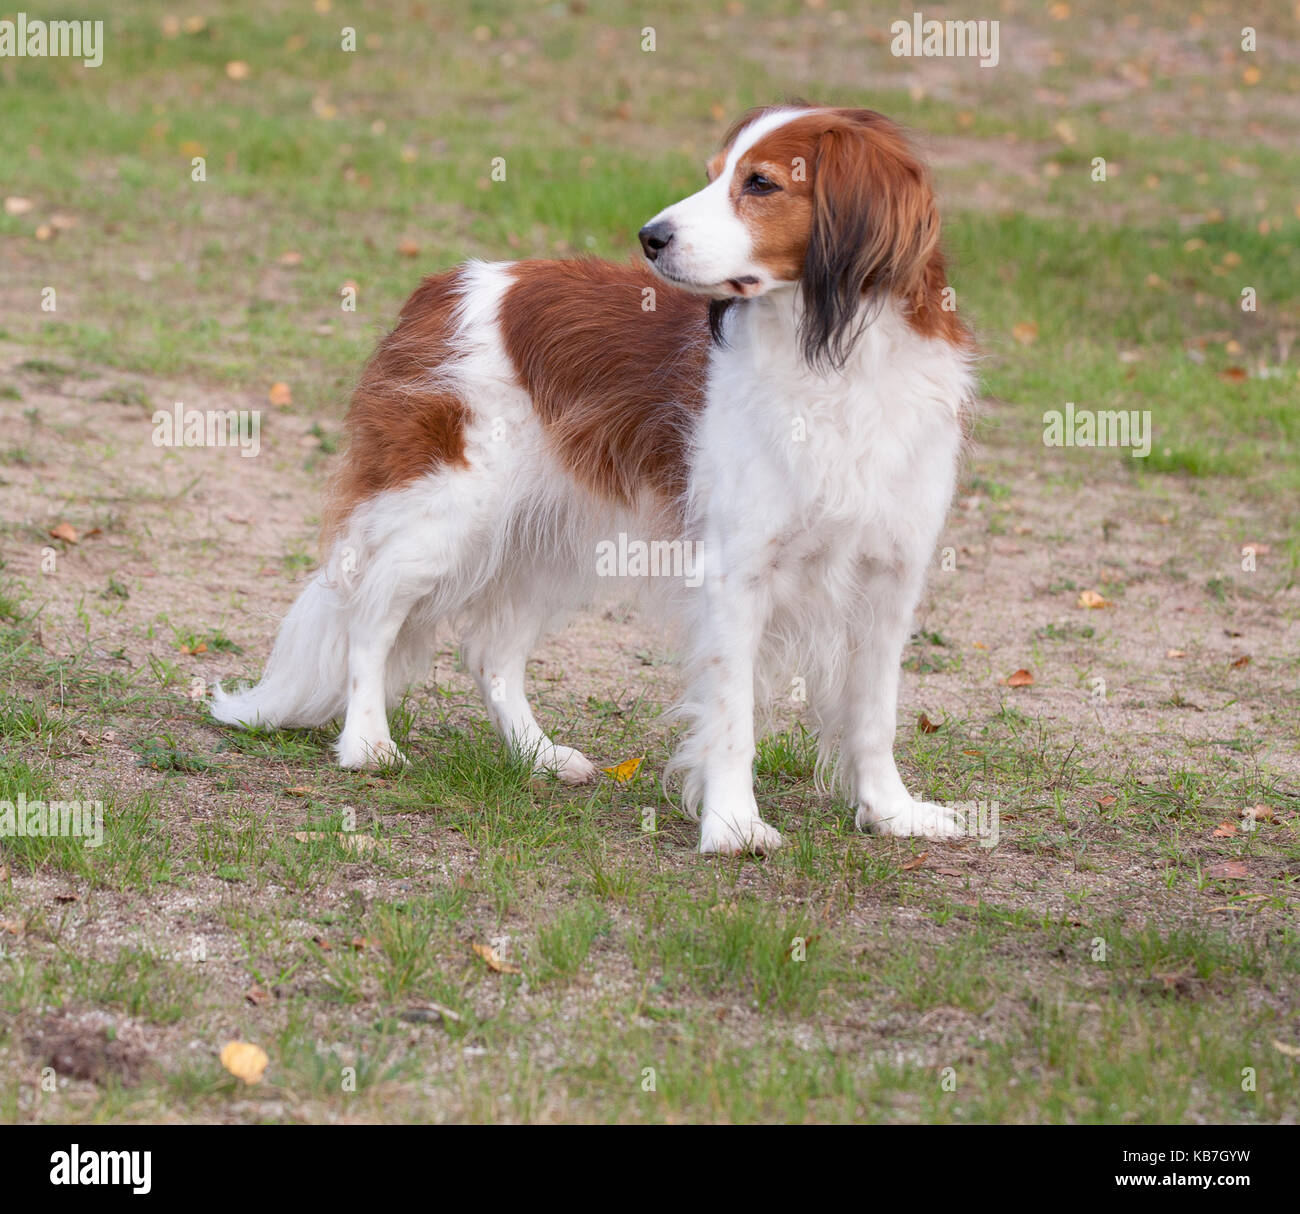 Le kooikerhondje 2017 épagneul est un type de chien d'ascendance néerlandaise Banque D'Images